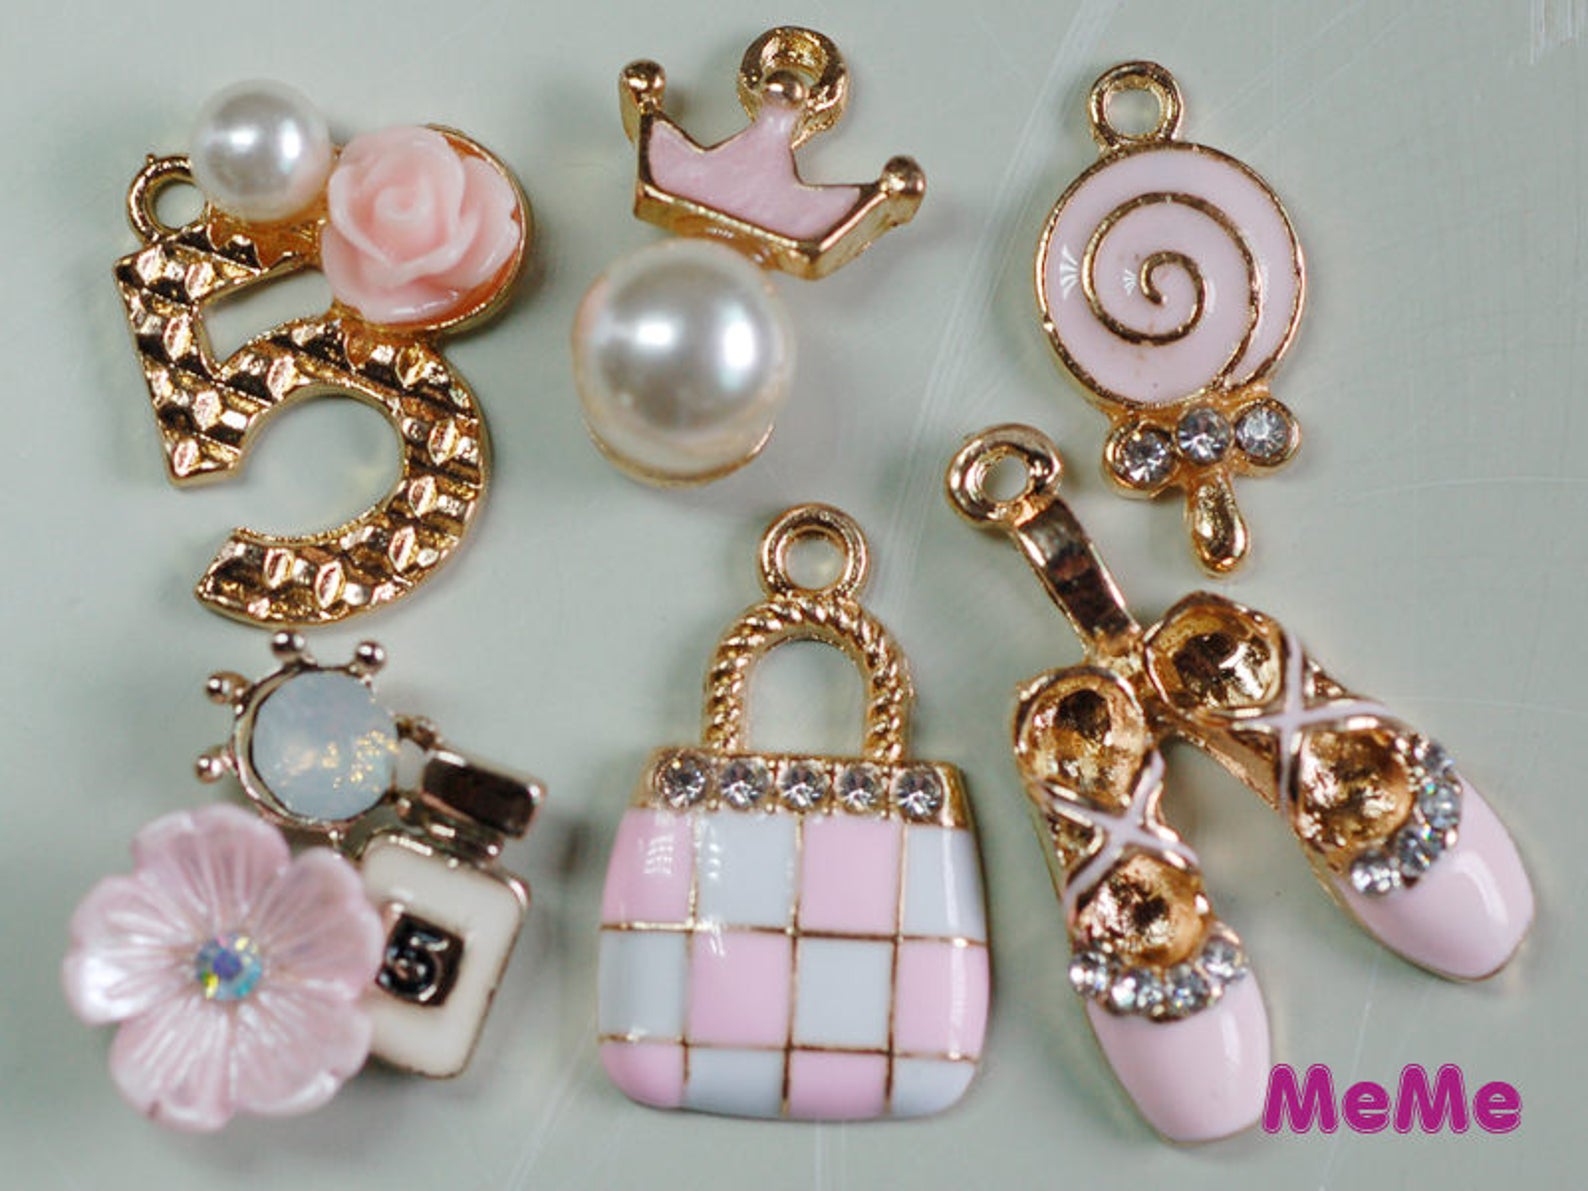 1 set 6 pcs charms pink alloy purse ballet shoe kawaii bracelets pendants accessories studs cabochon deco den phone case diy dec